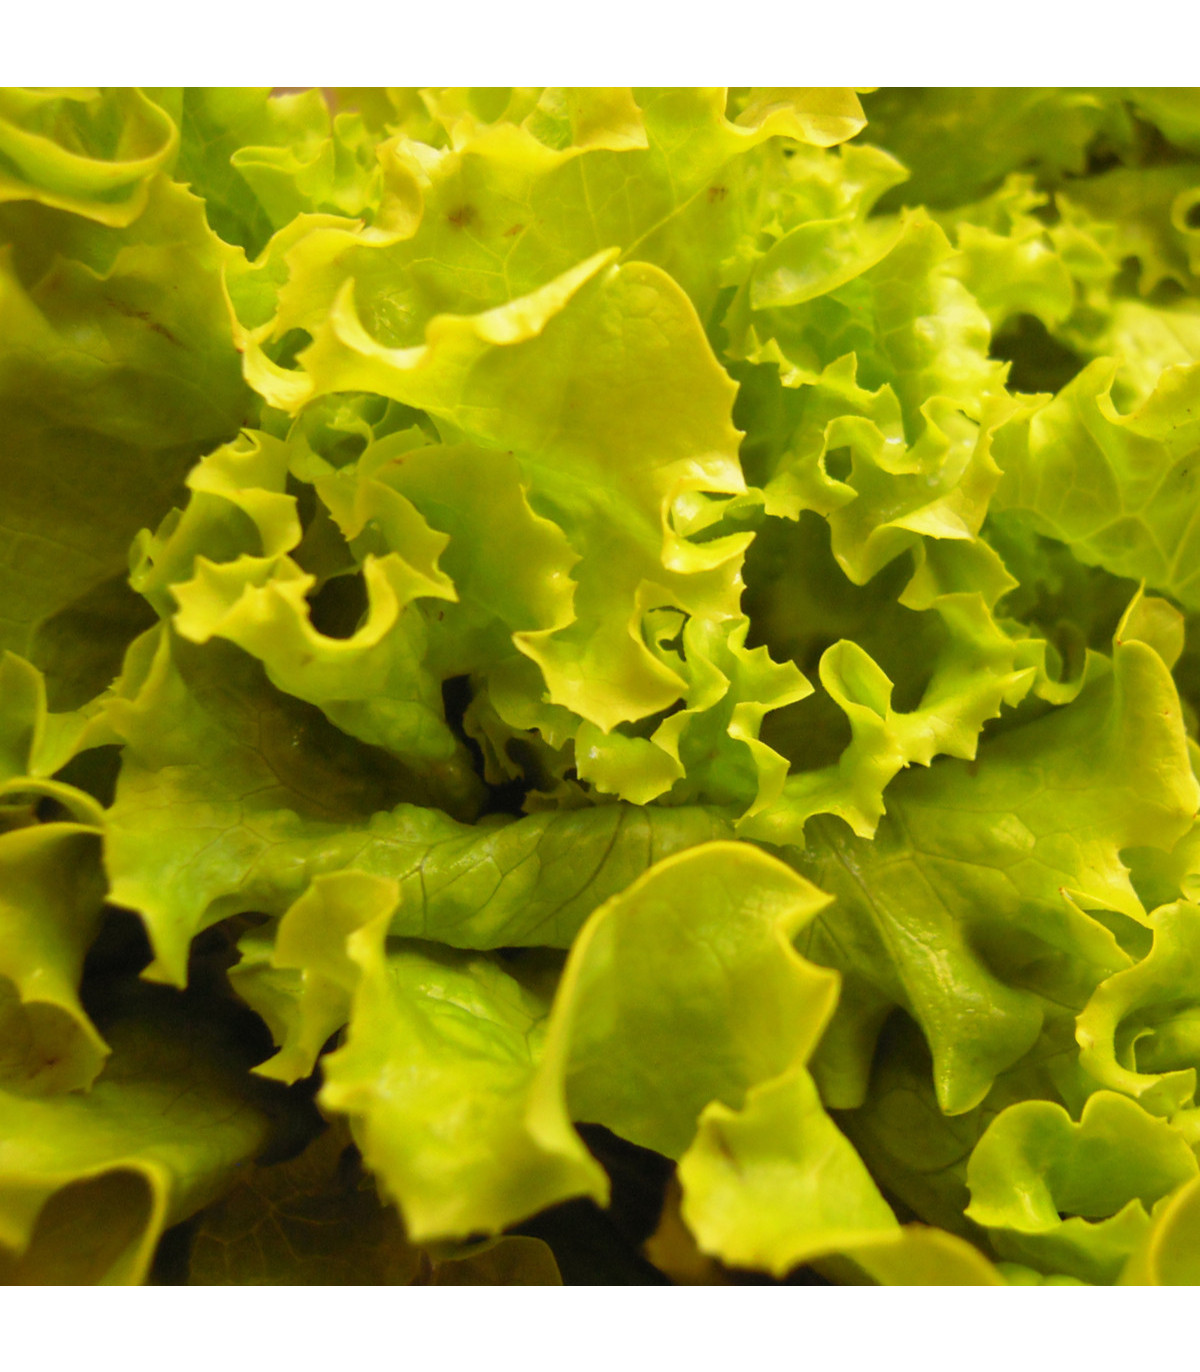 Salát hlávkový Maikönig - Lactuca sativa - osivo salátu - 800 ks